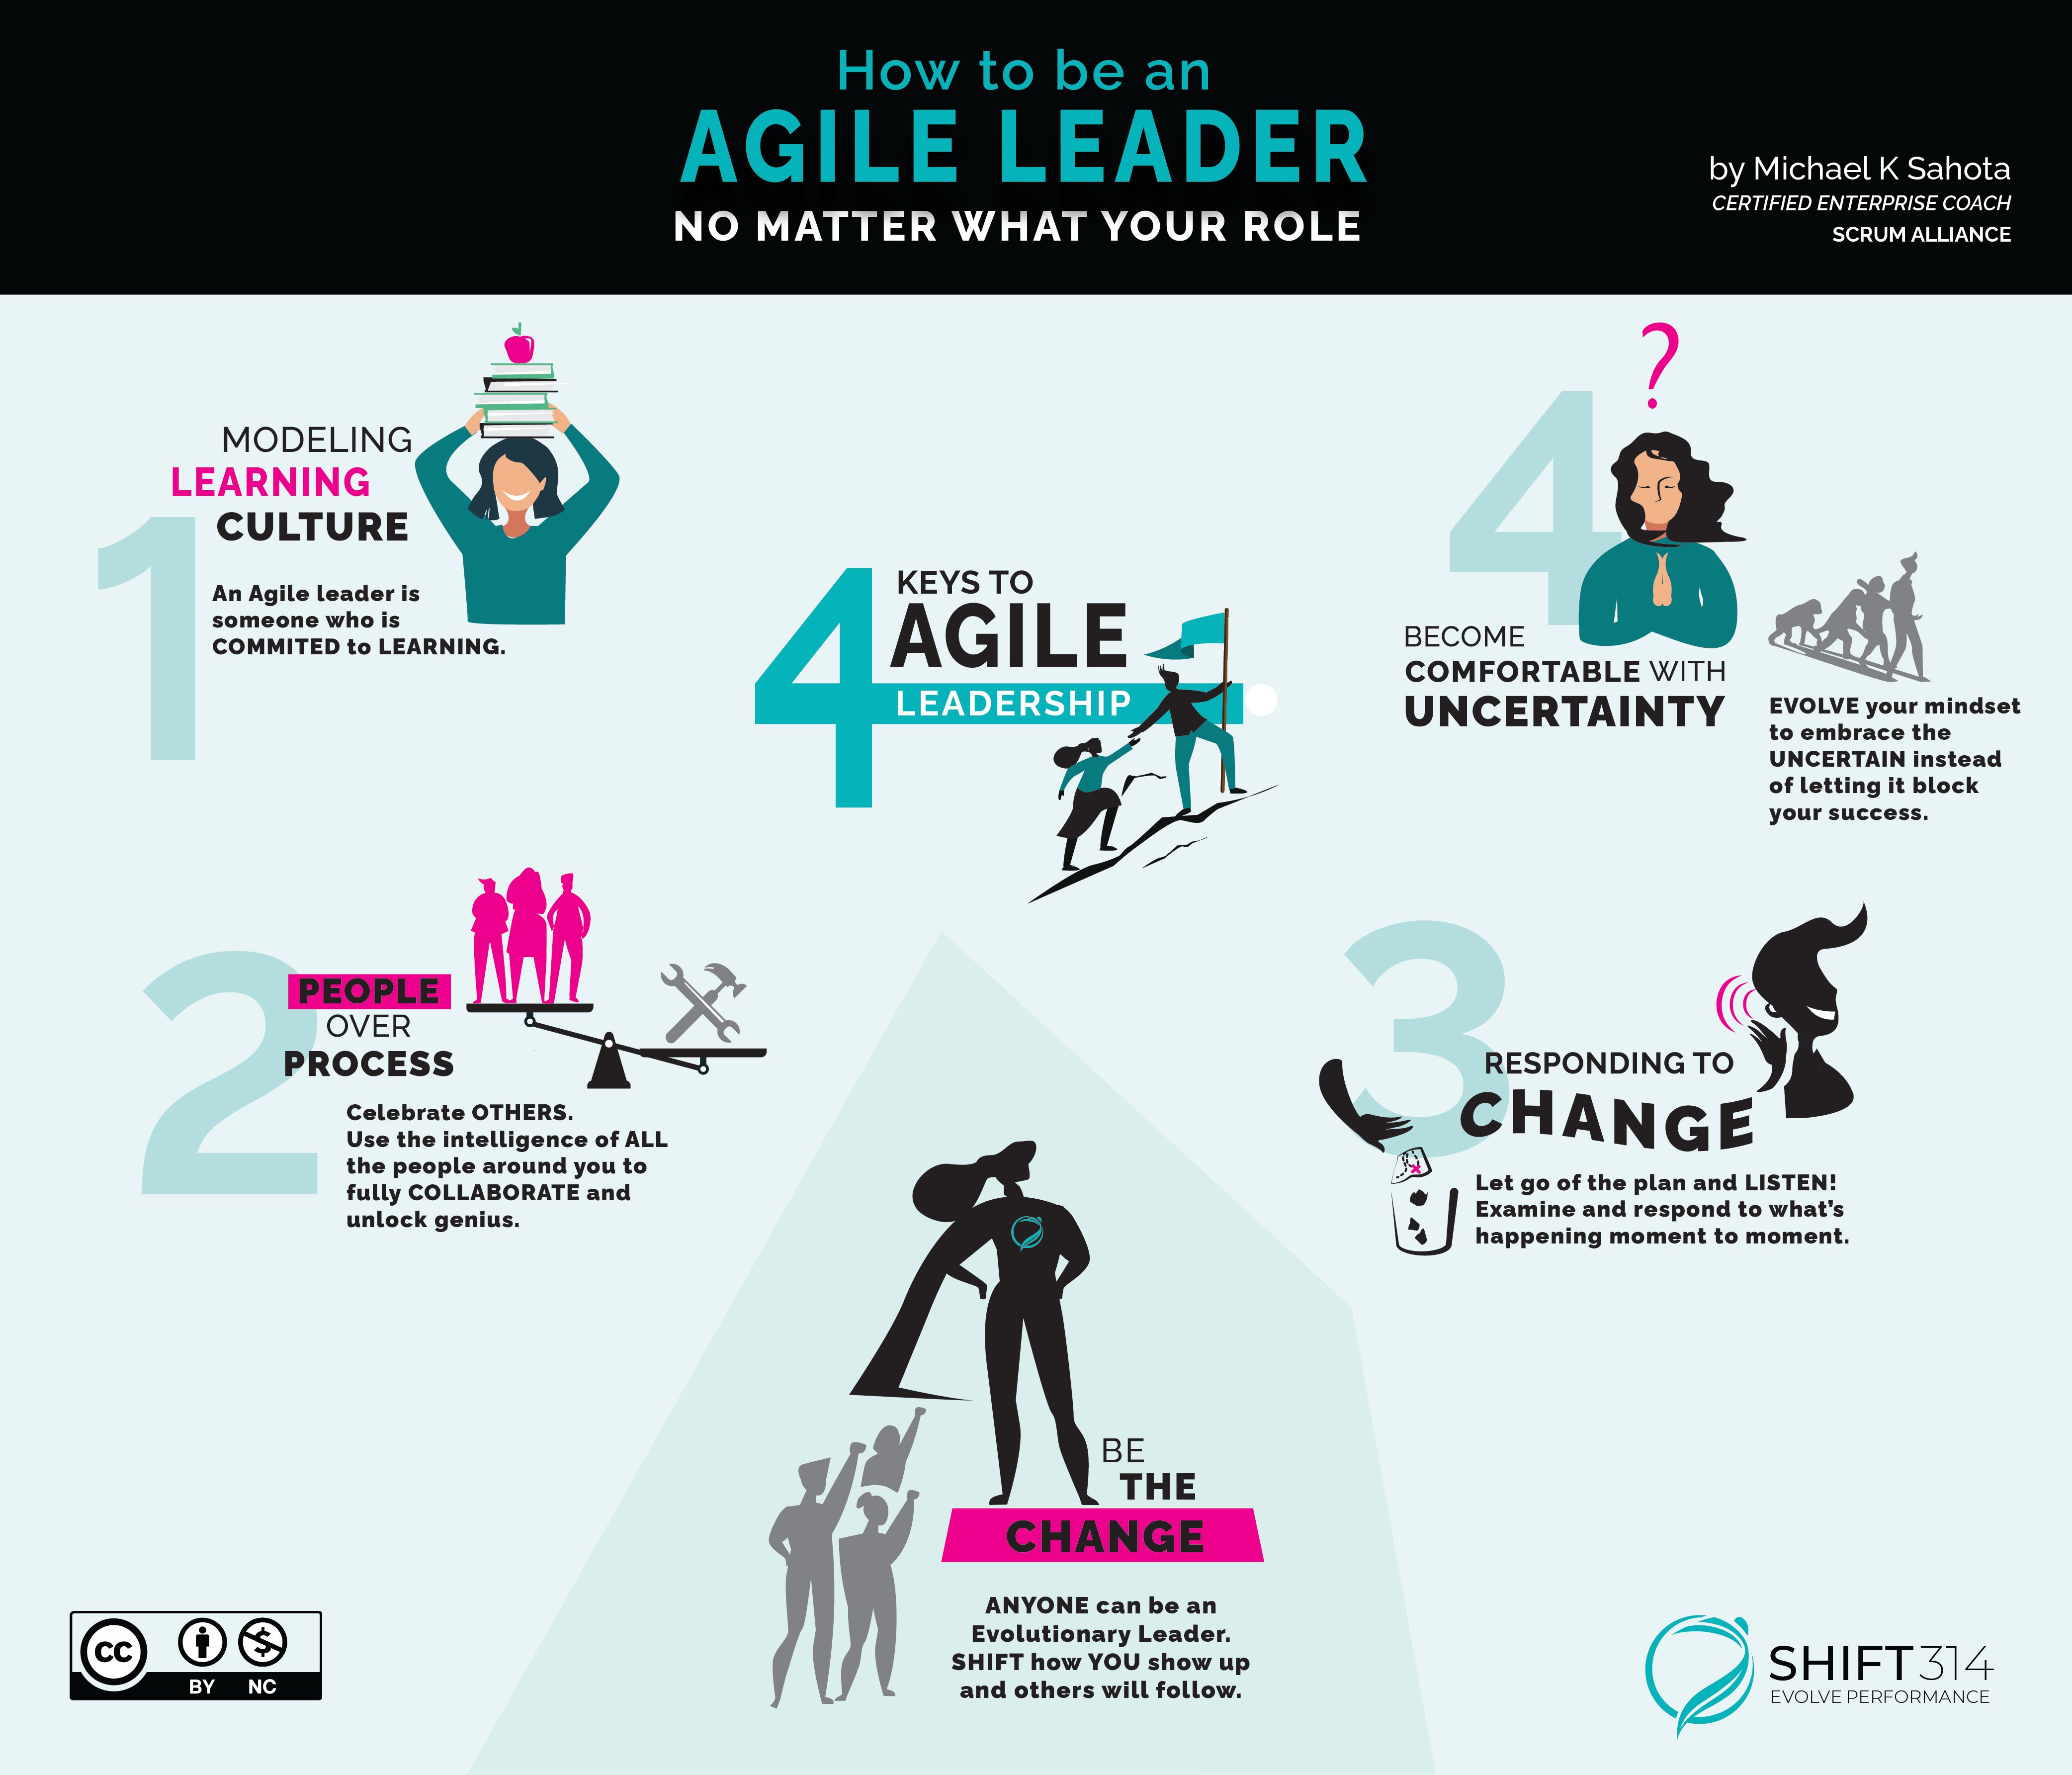 How do I become an agile lead?